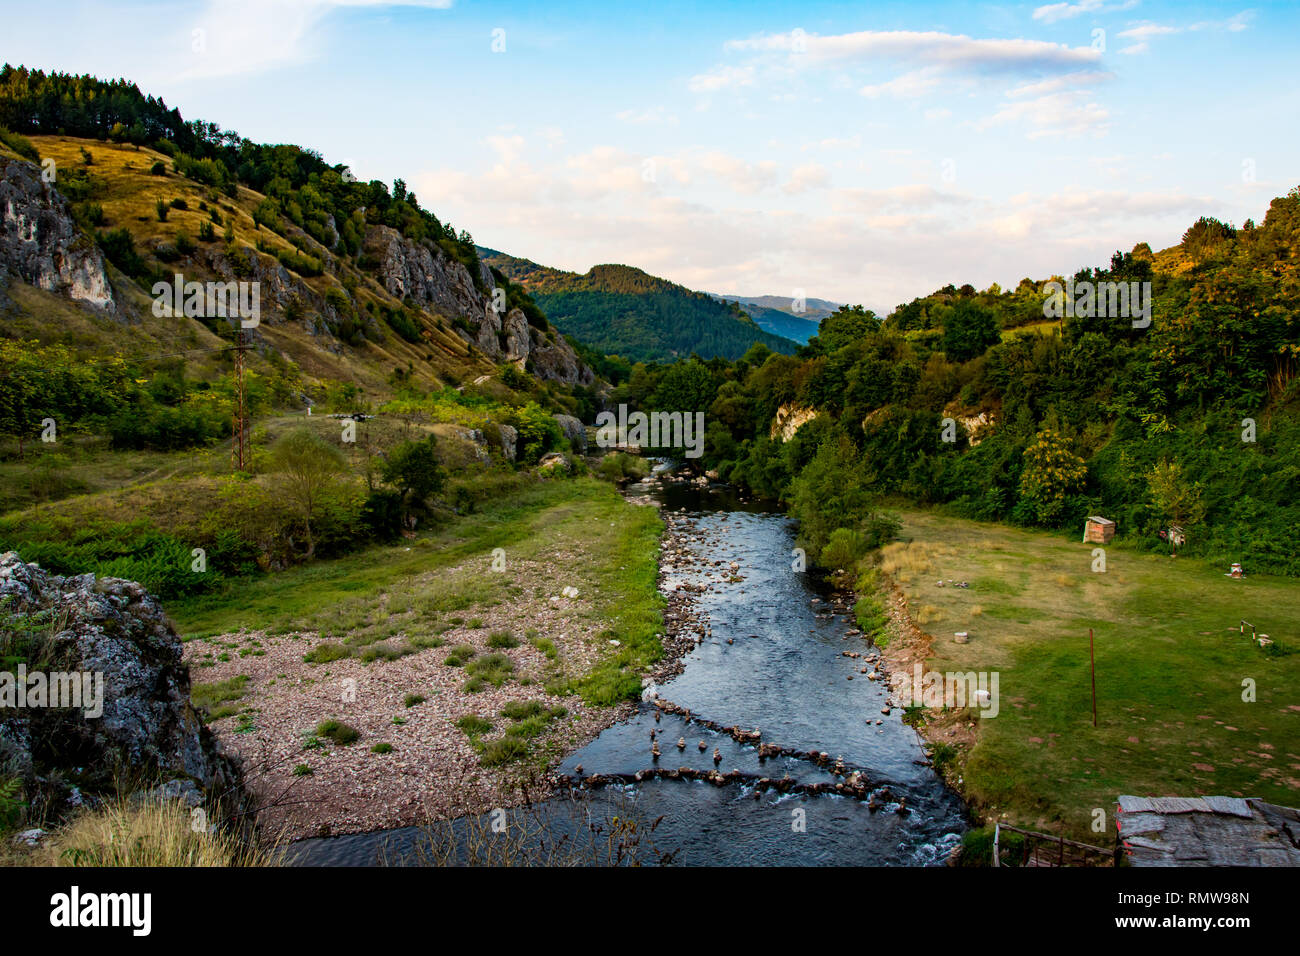 Temstica oder Topli tun Fluß auf einem alten Berg (Stara Planina), in der Nähe von See Zavoj, von dichter Vegetation und Wald umgeben. Stockfoto